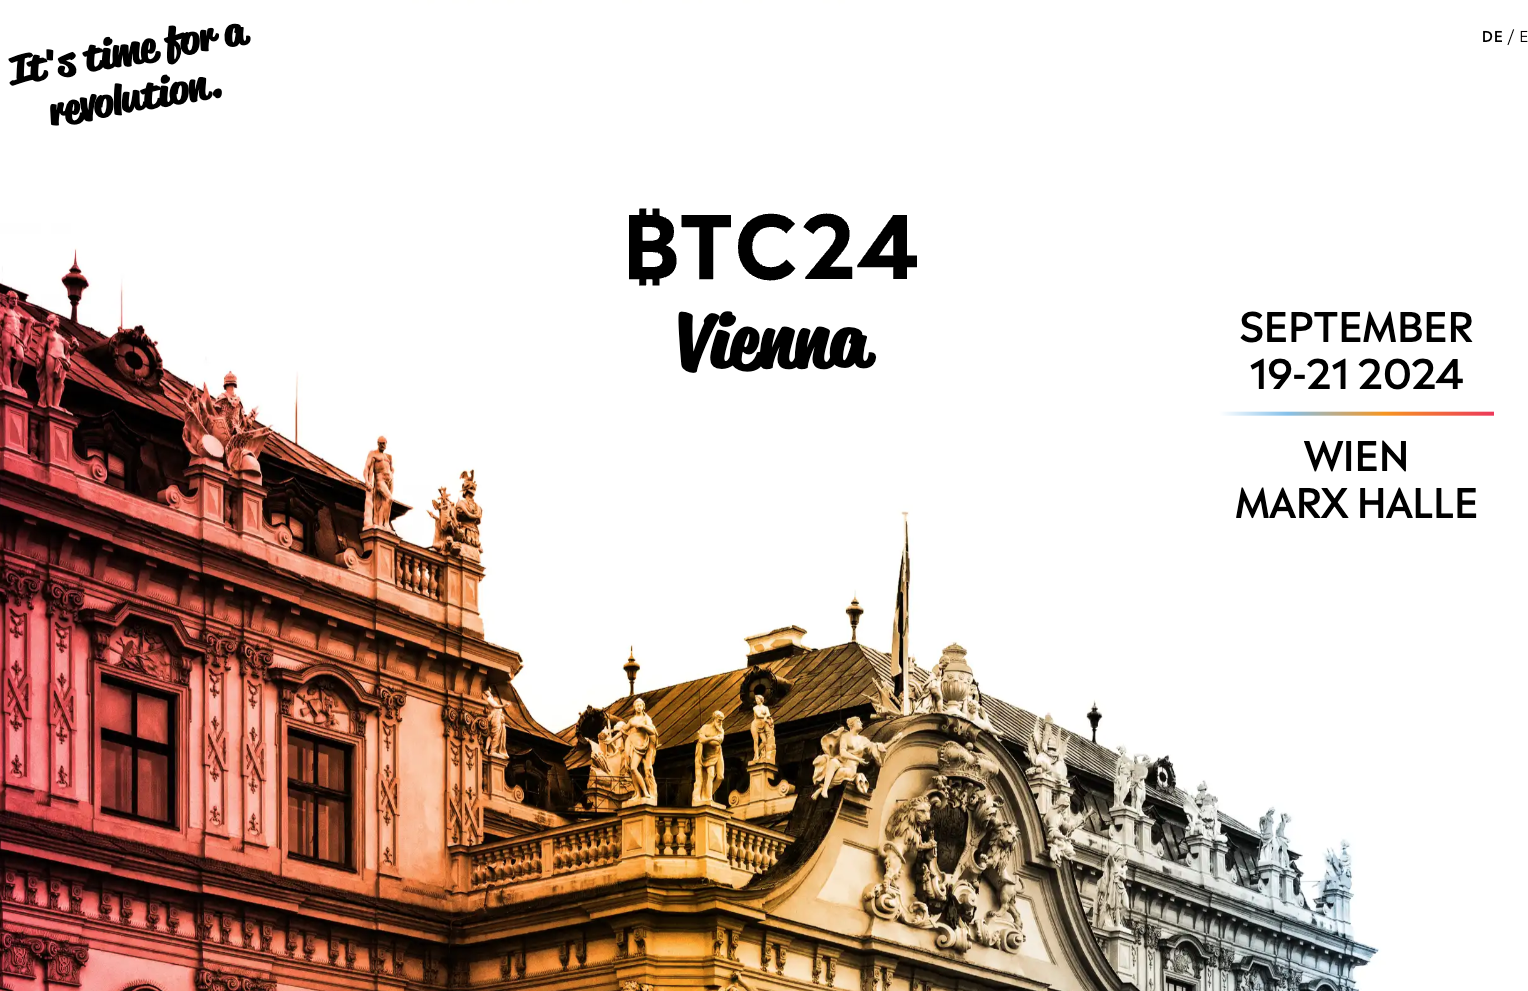 BTC24 in Wien